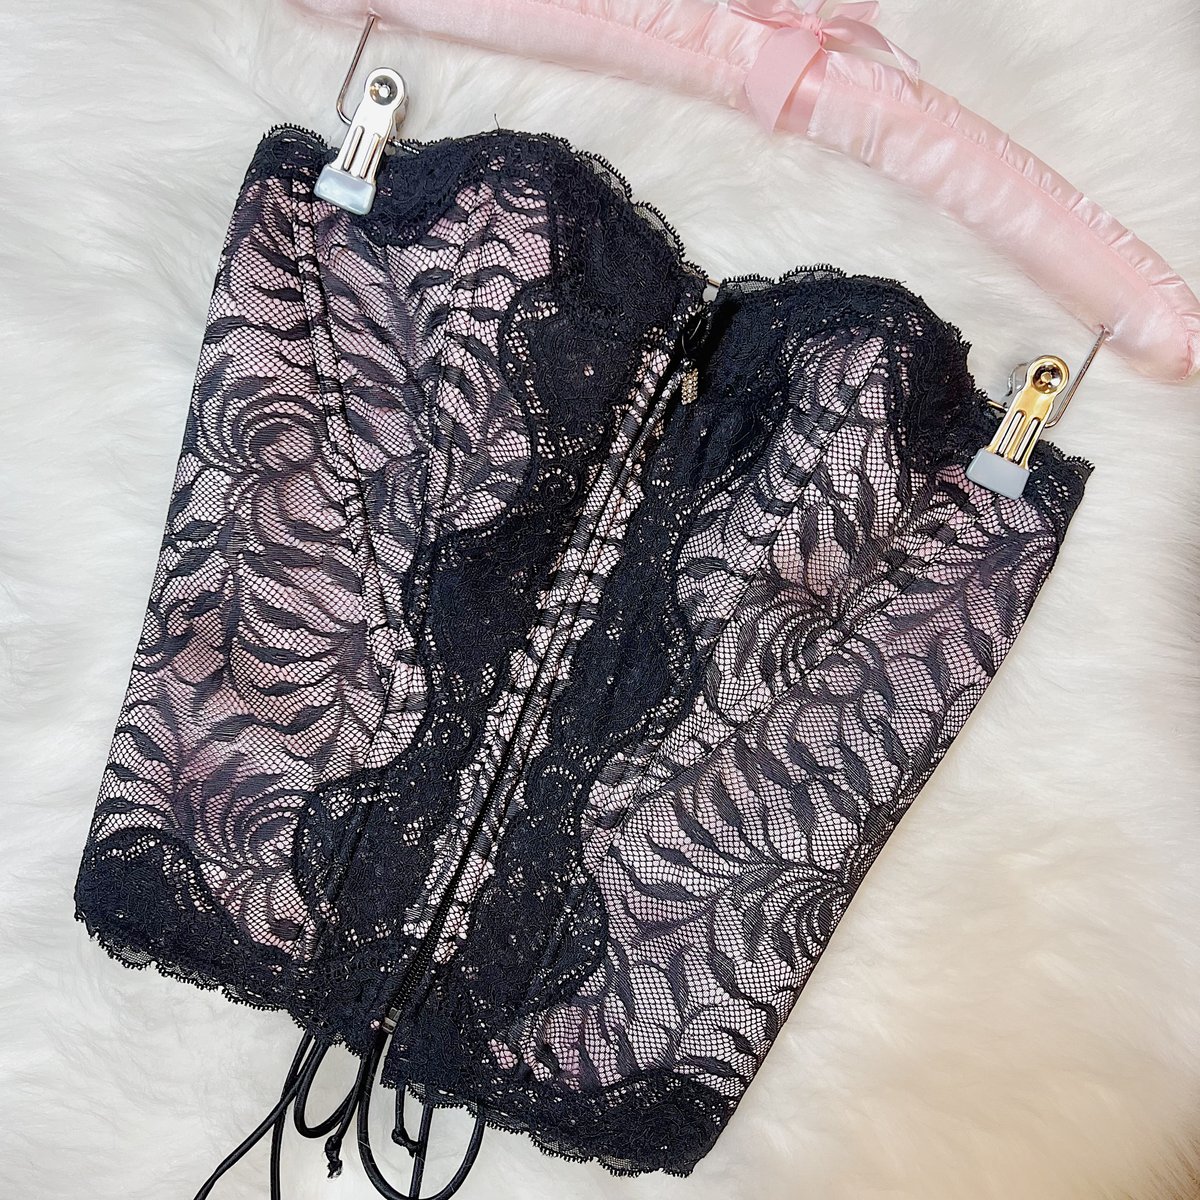 Size 34C/32D - Victoria's Secret Longline Fuchsia Lace Bustier